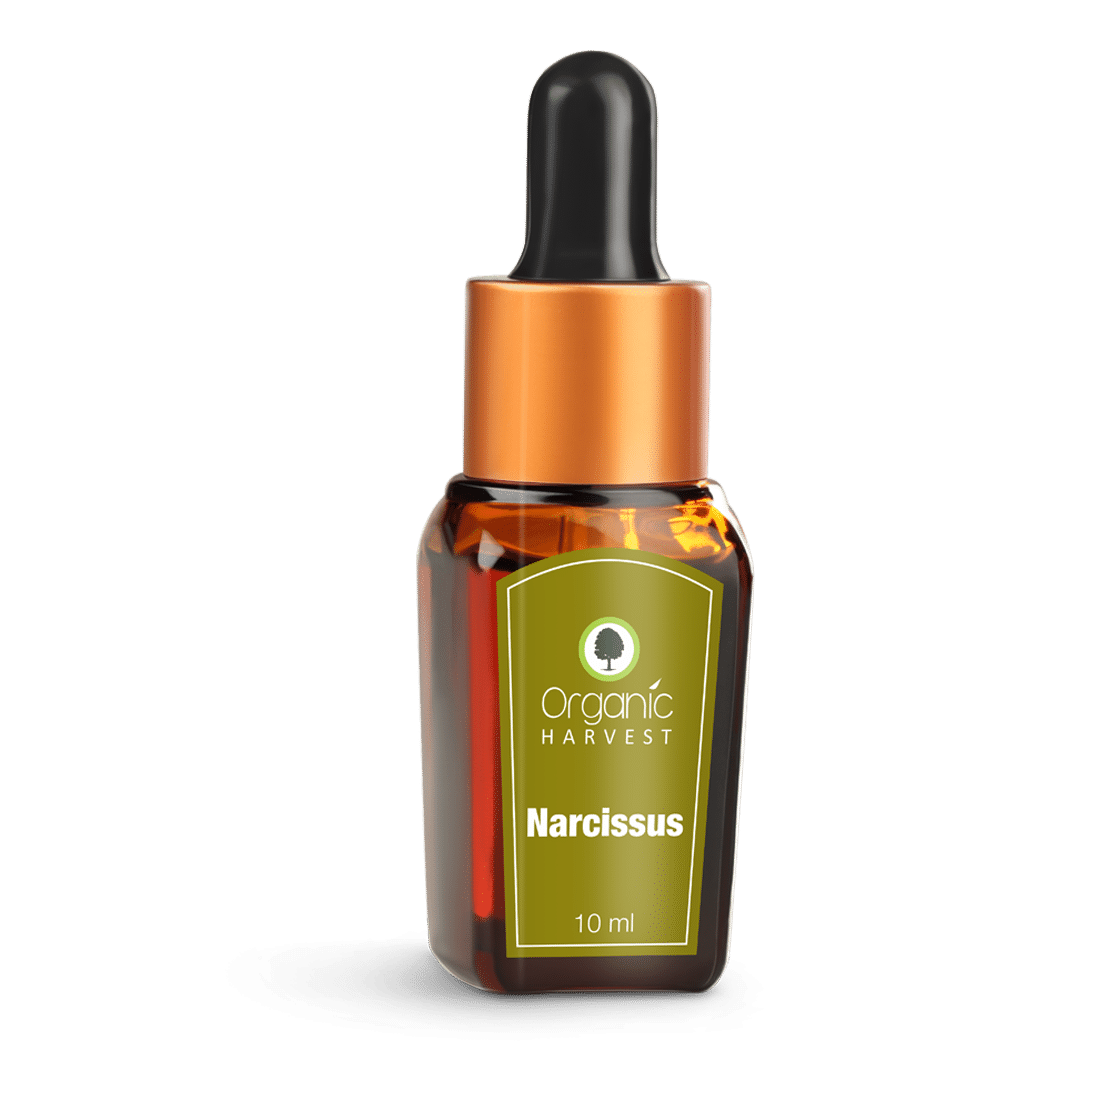 Organic Harvest Narcissus Essential Oil